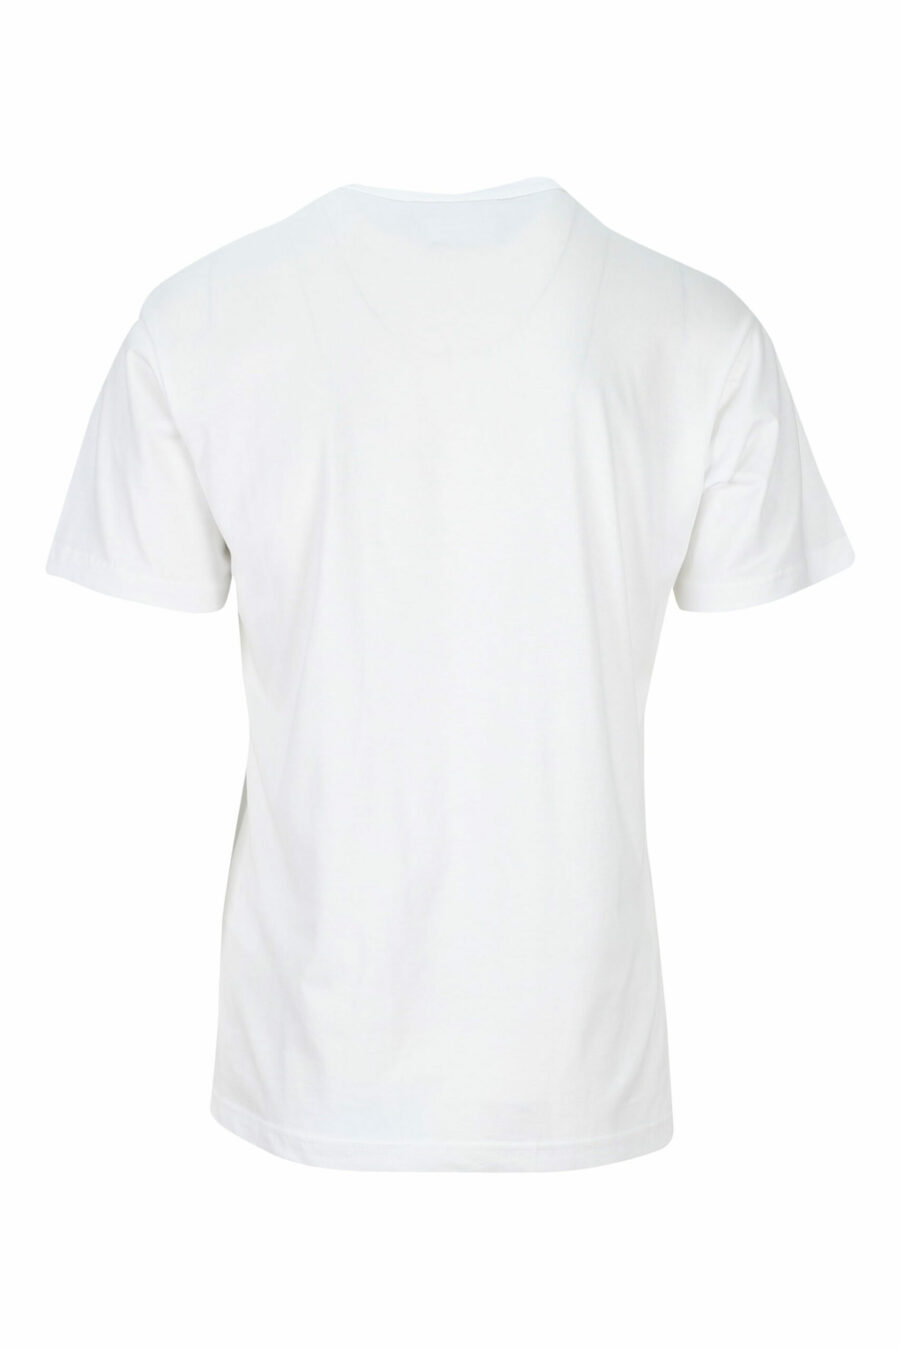 T-shirt blanc avec maxilogo noir "numéro de pièce" - 8052019468663 1 scaled